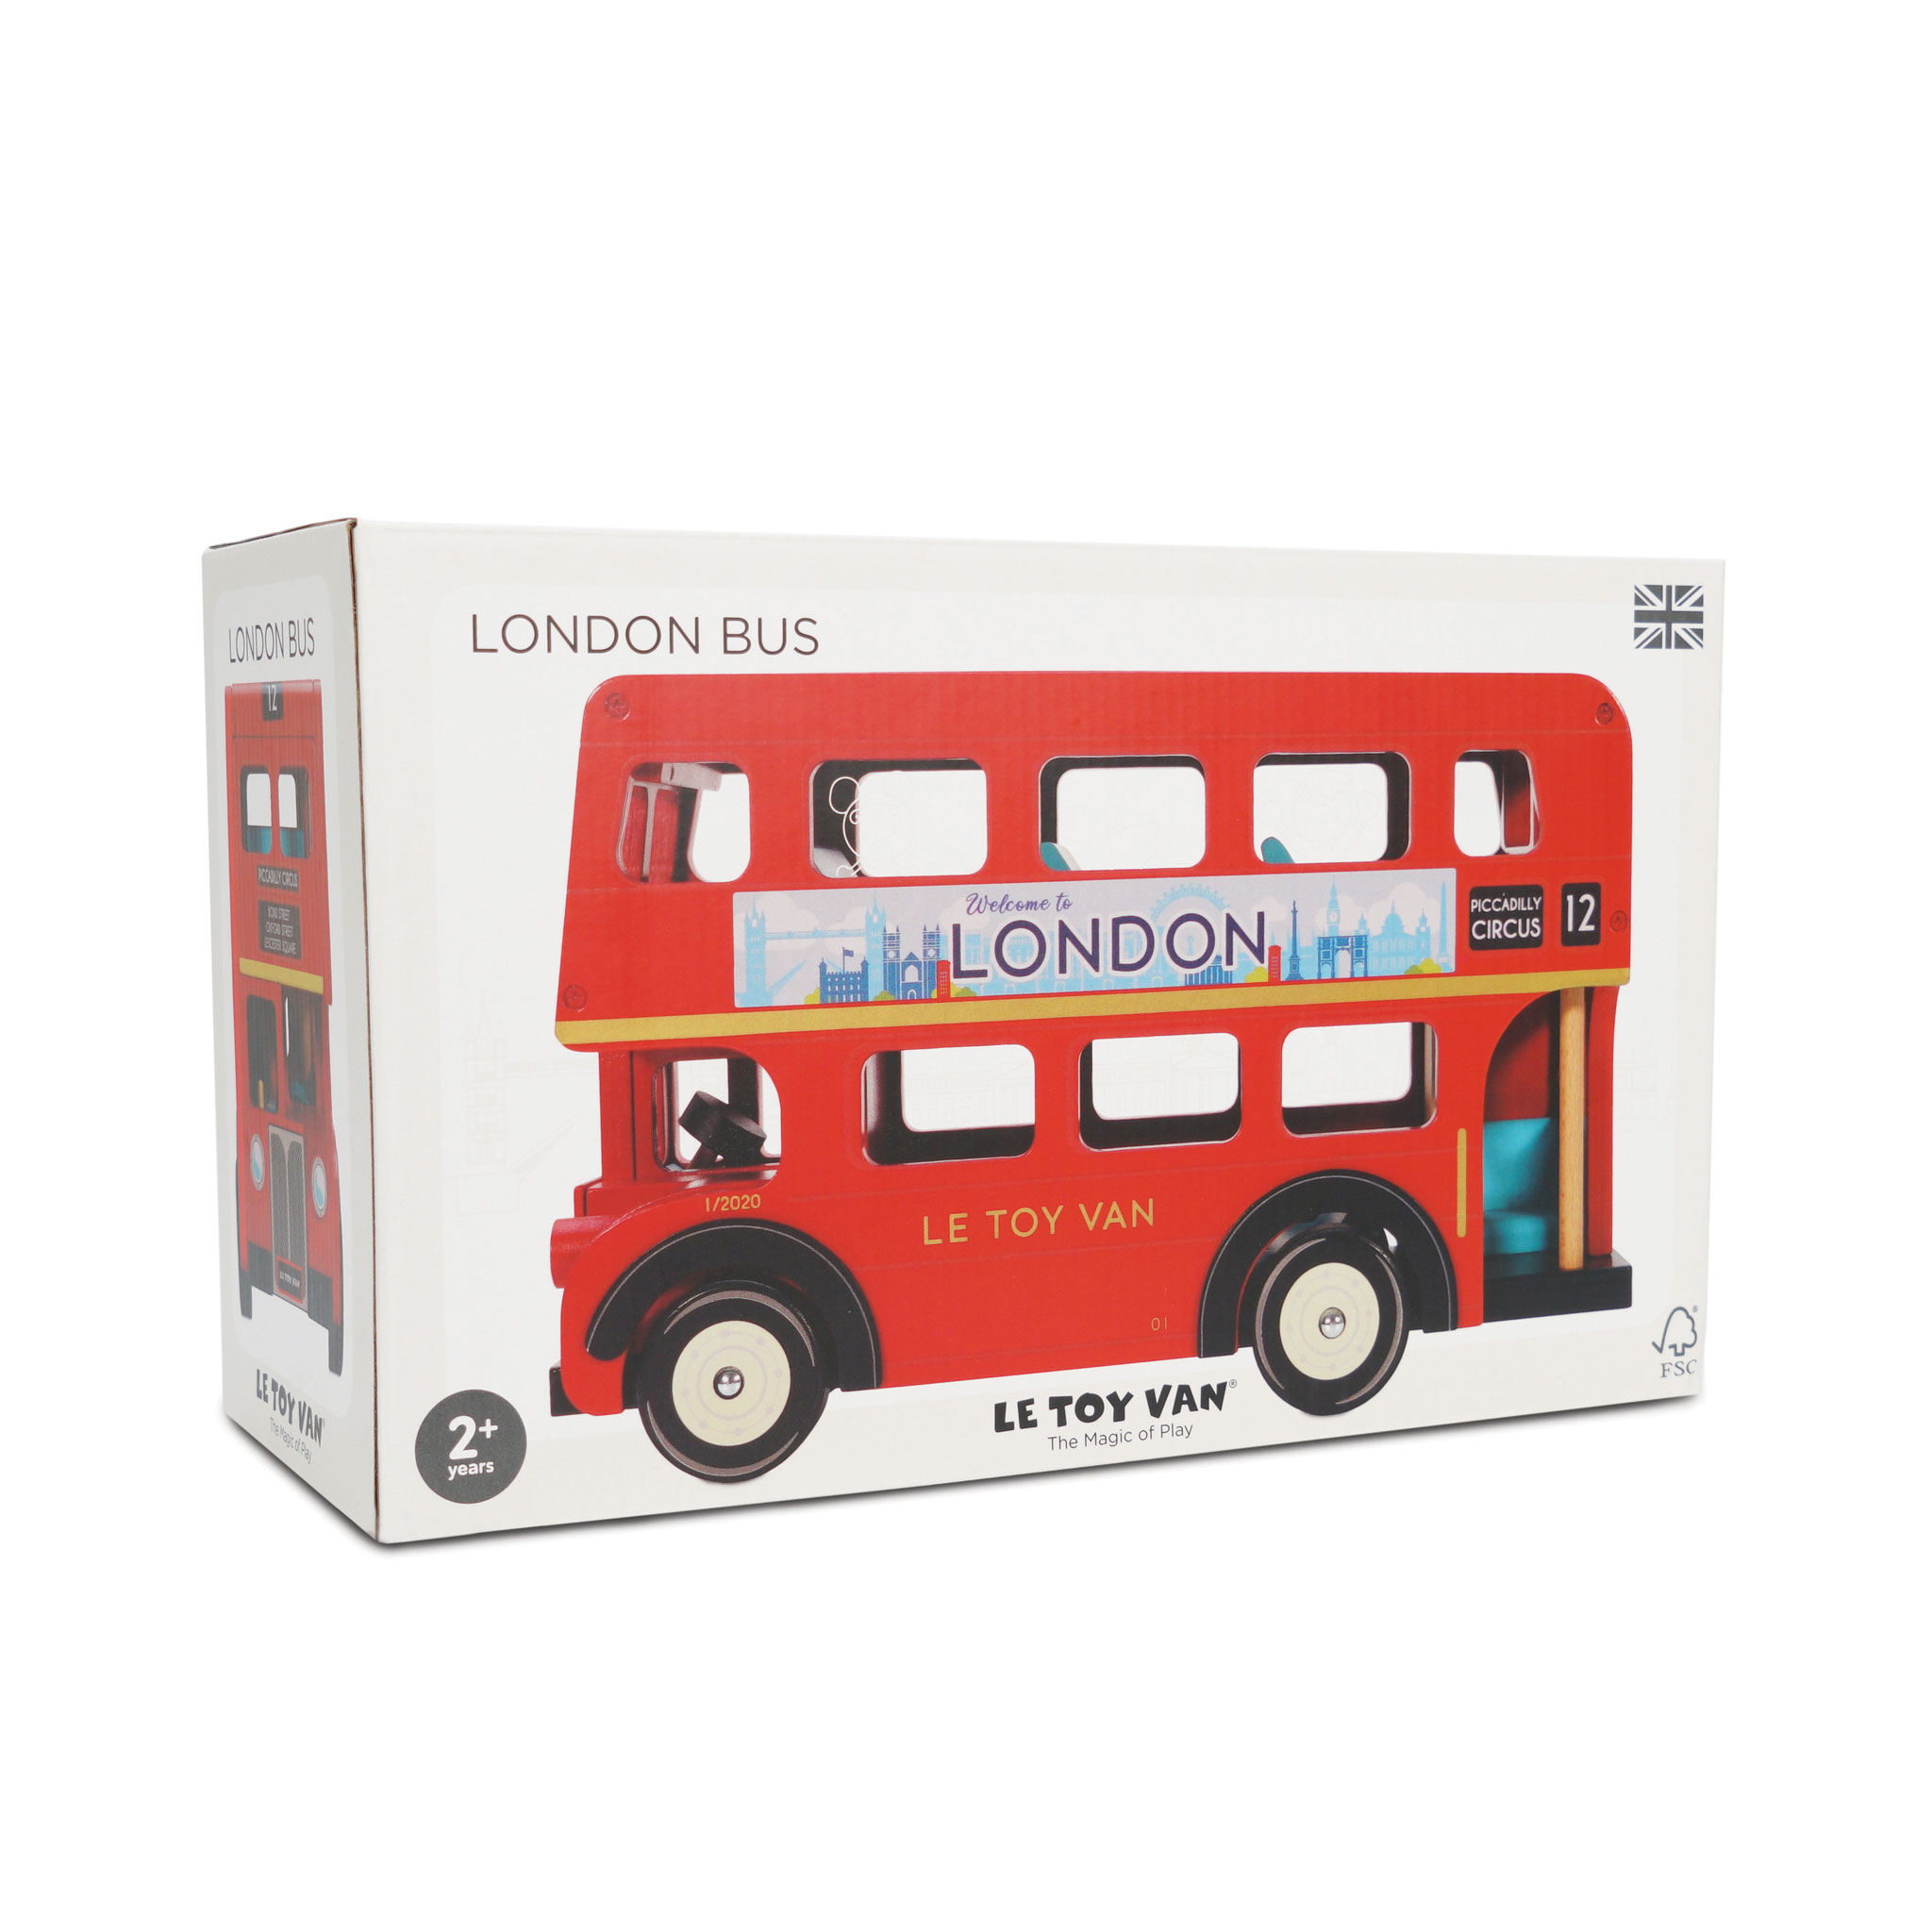 TV469-london-bus-packaging-1